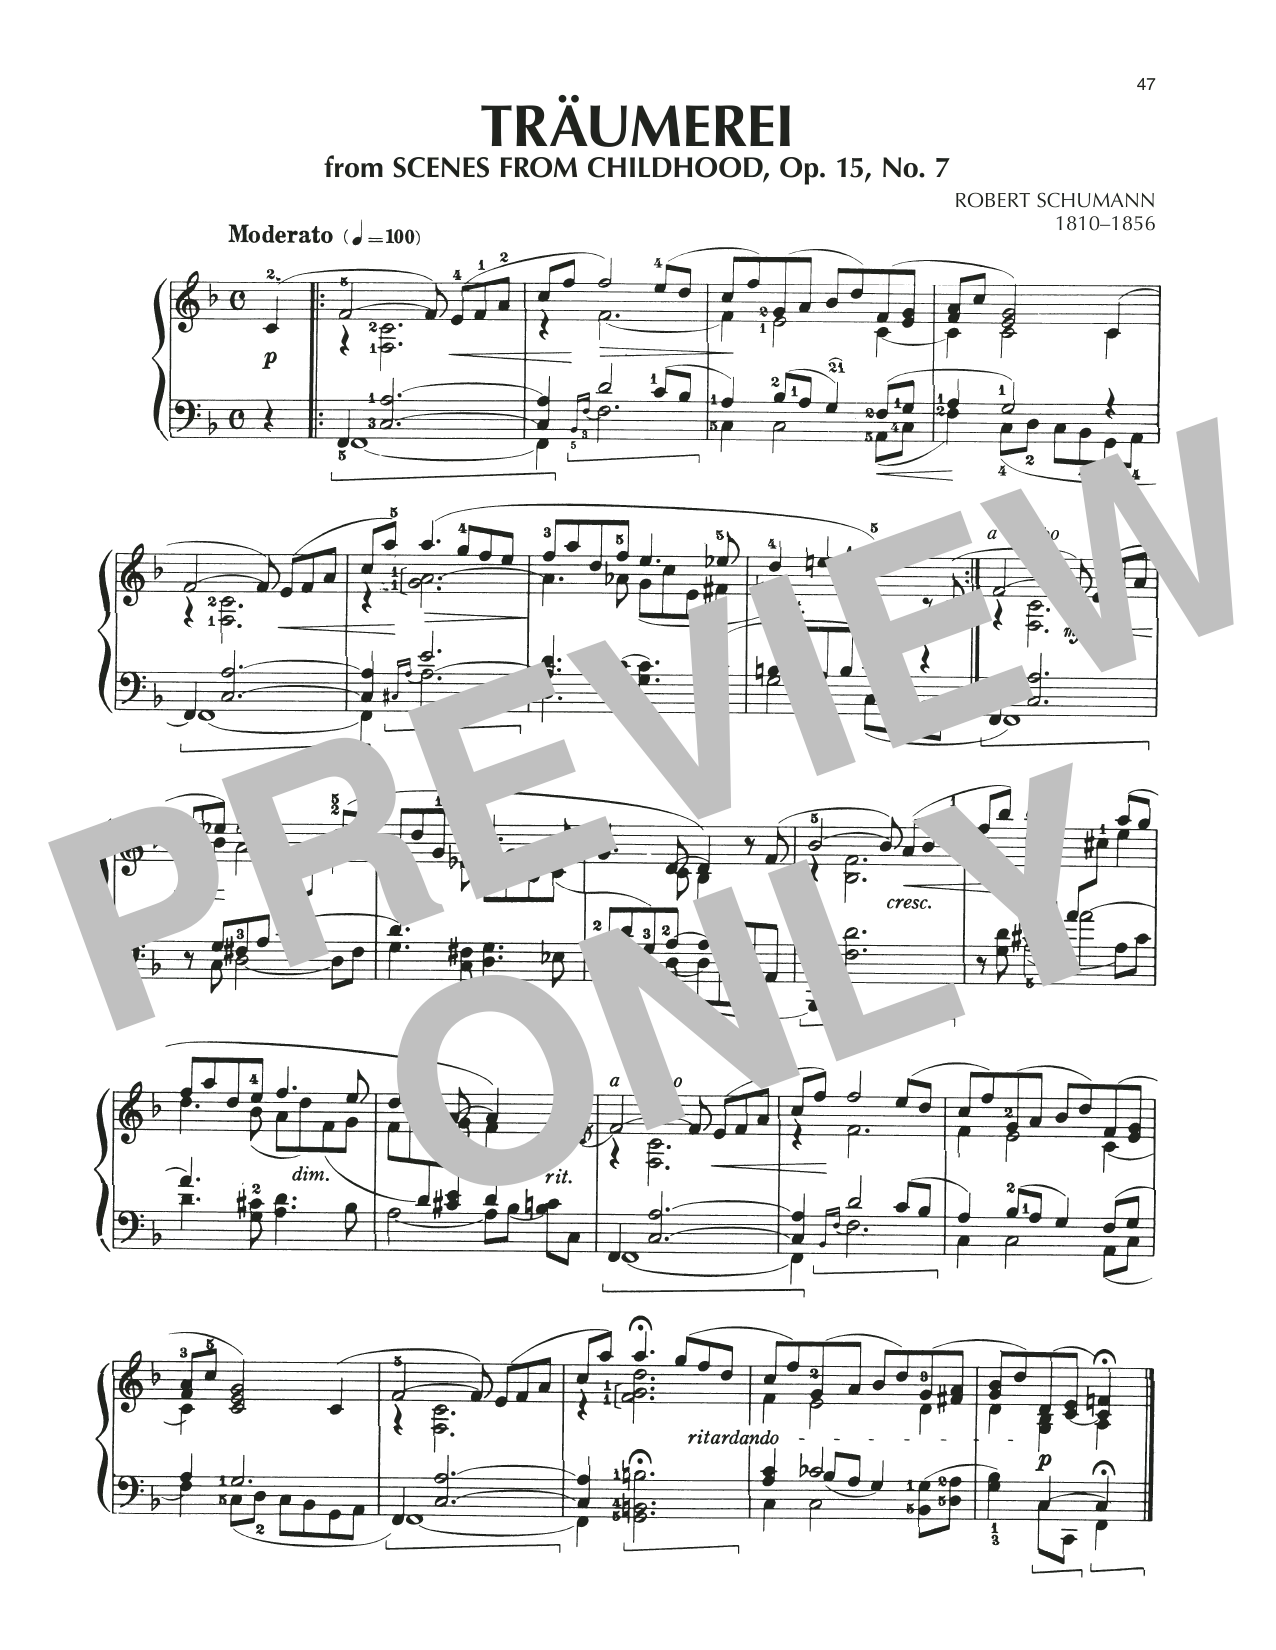 Download Robert Schumann Traumerei (Dreaming), Op. 15, No. 7 Sheet Music